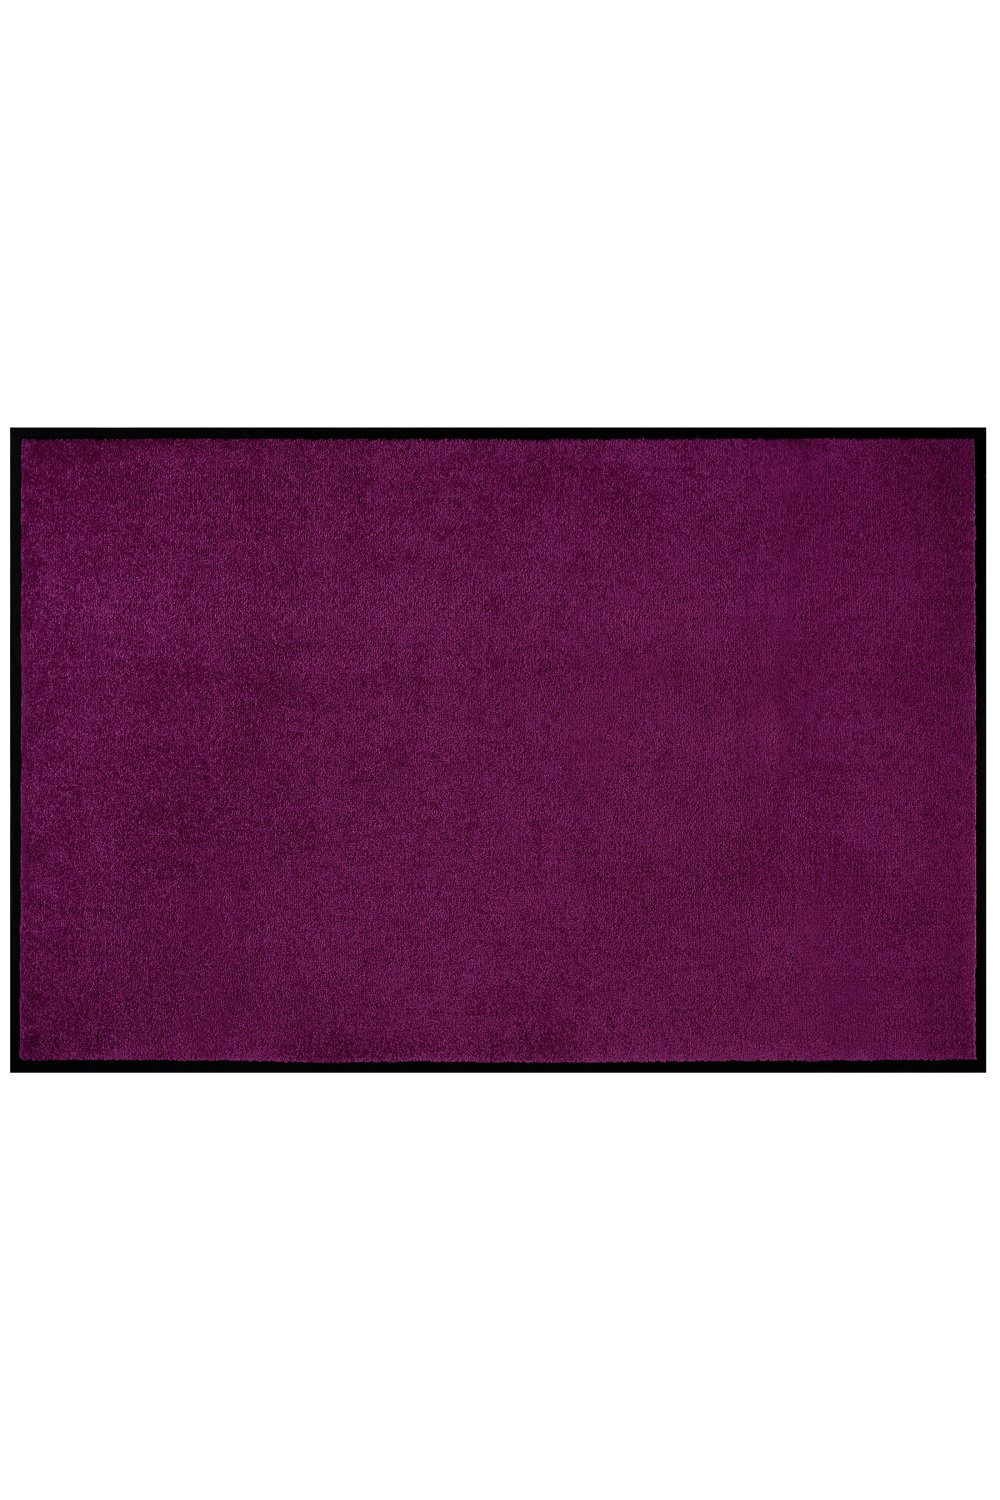 Mata Wejściowa Fioletowa Uni Fussmatten 104487 Violet